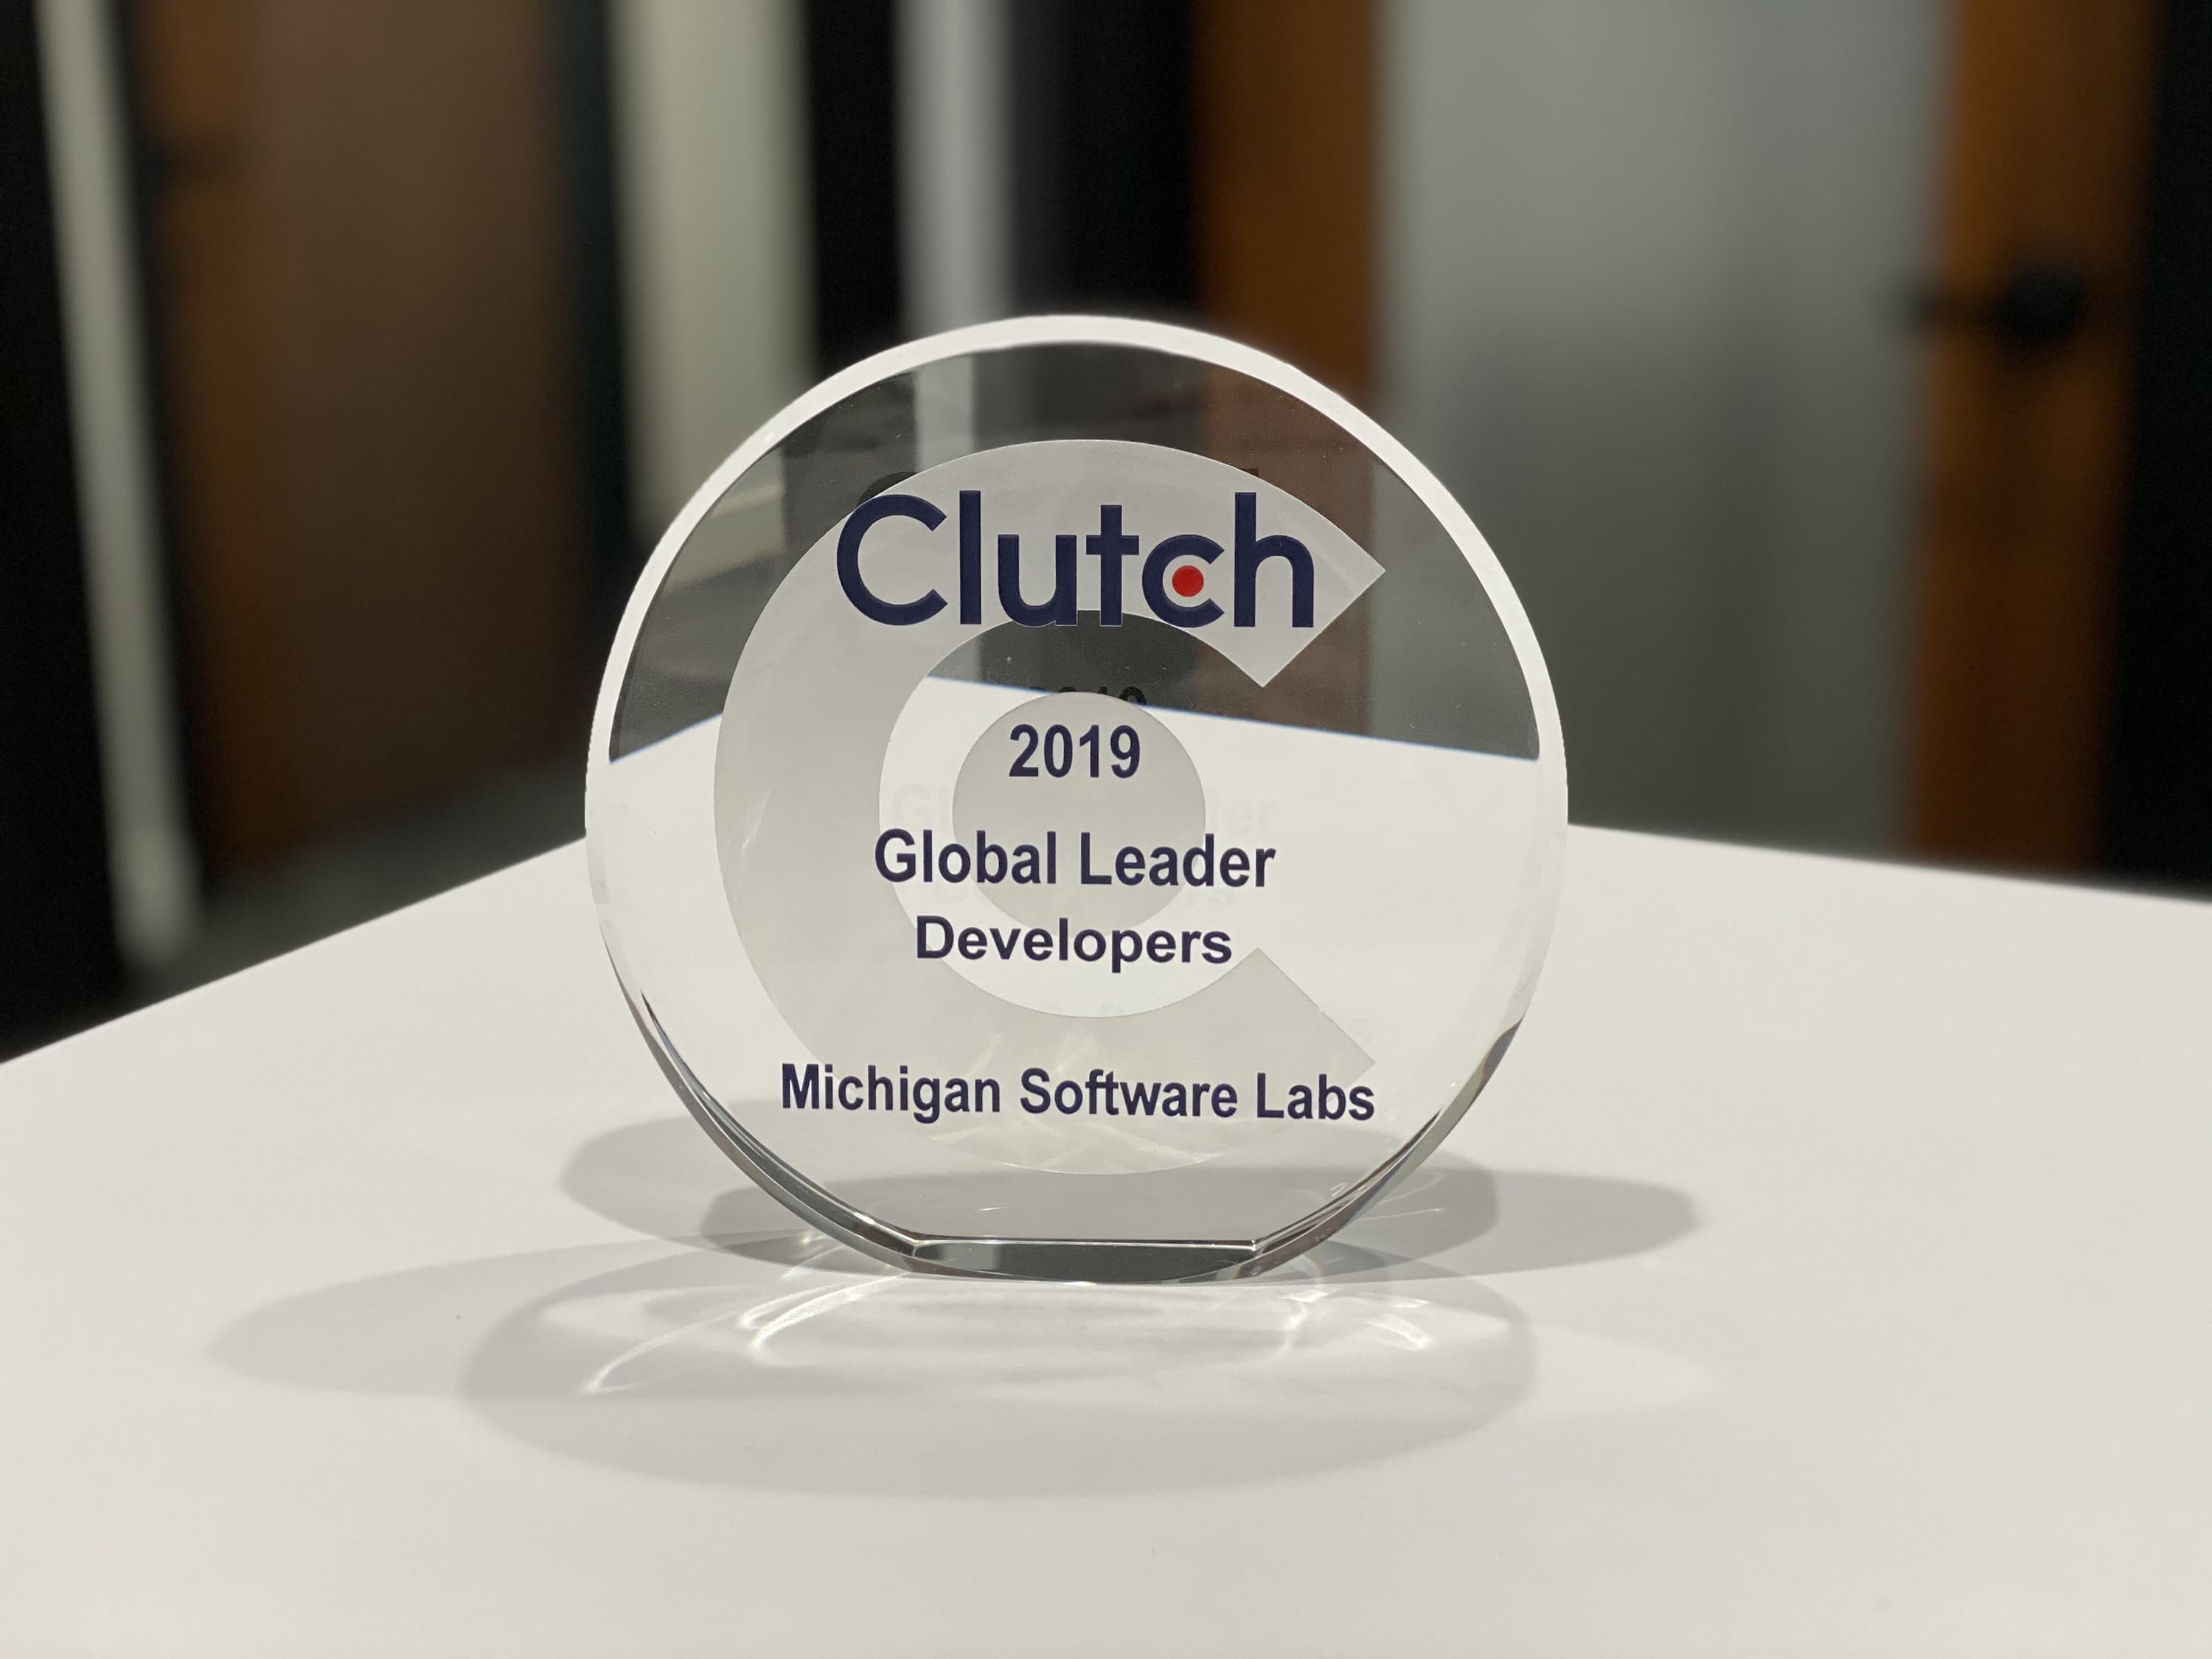 Clutch Names Michigan Software Labs as a 2019 Top Developer in U.S.A.